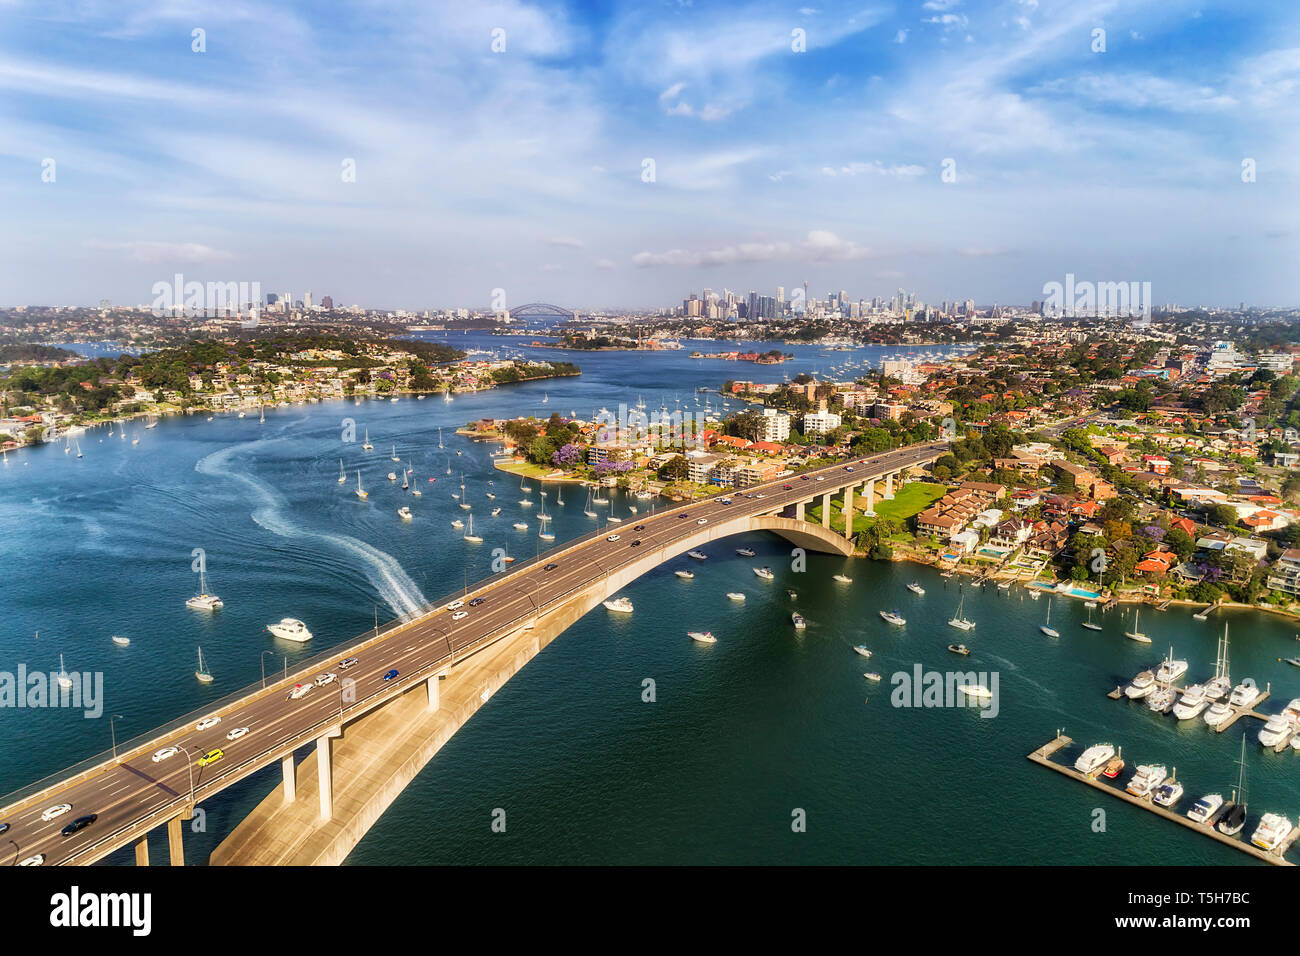 Konkrete Bogen von Gladesville Brücke über Parramatta River in Sydneys Innerem Westen mit Blick auf die weit entfernte Stadt Sydney CBD und lokalen Marina angedockt Floating y Stockfoto